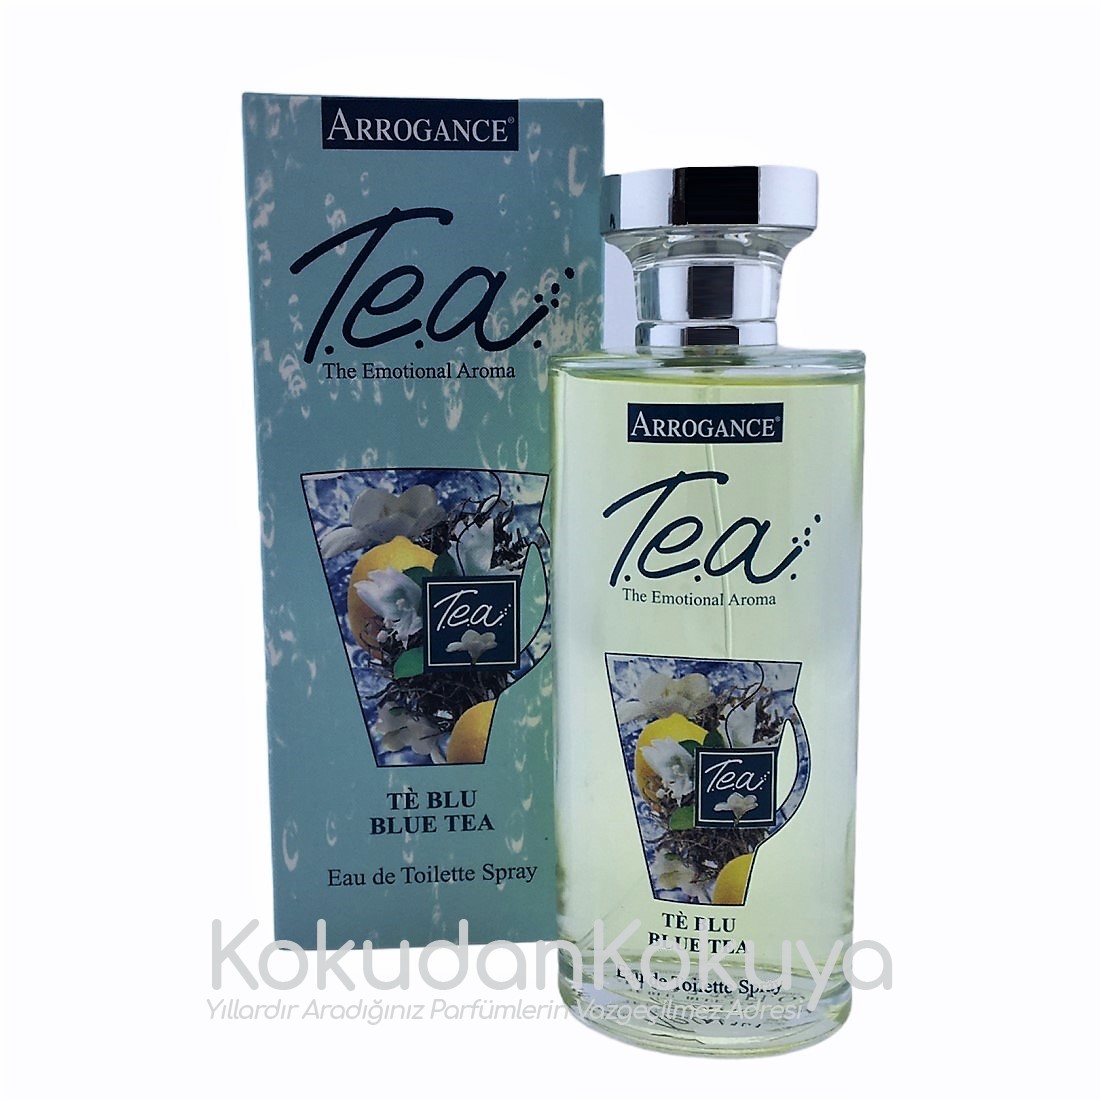 SCHIAPPARELLI PIKENZ Arrogance T.e.a Blue Tea Perfume (Vintage) Parfüm Kadın 100ml Eau De Toilette (EDT) Sprey 